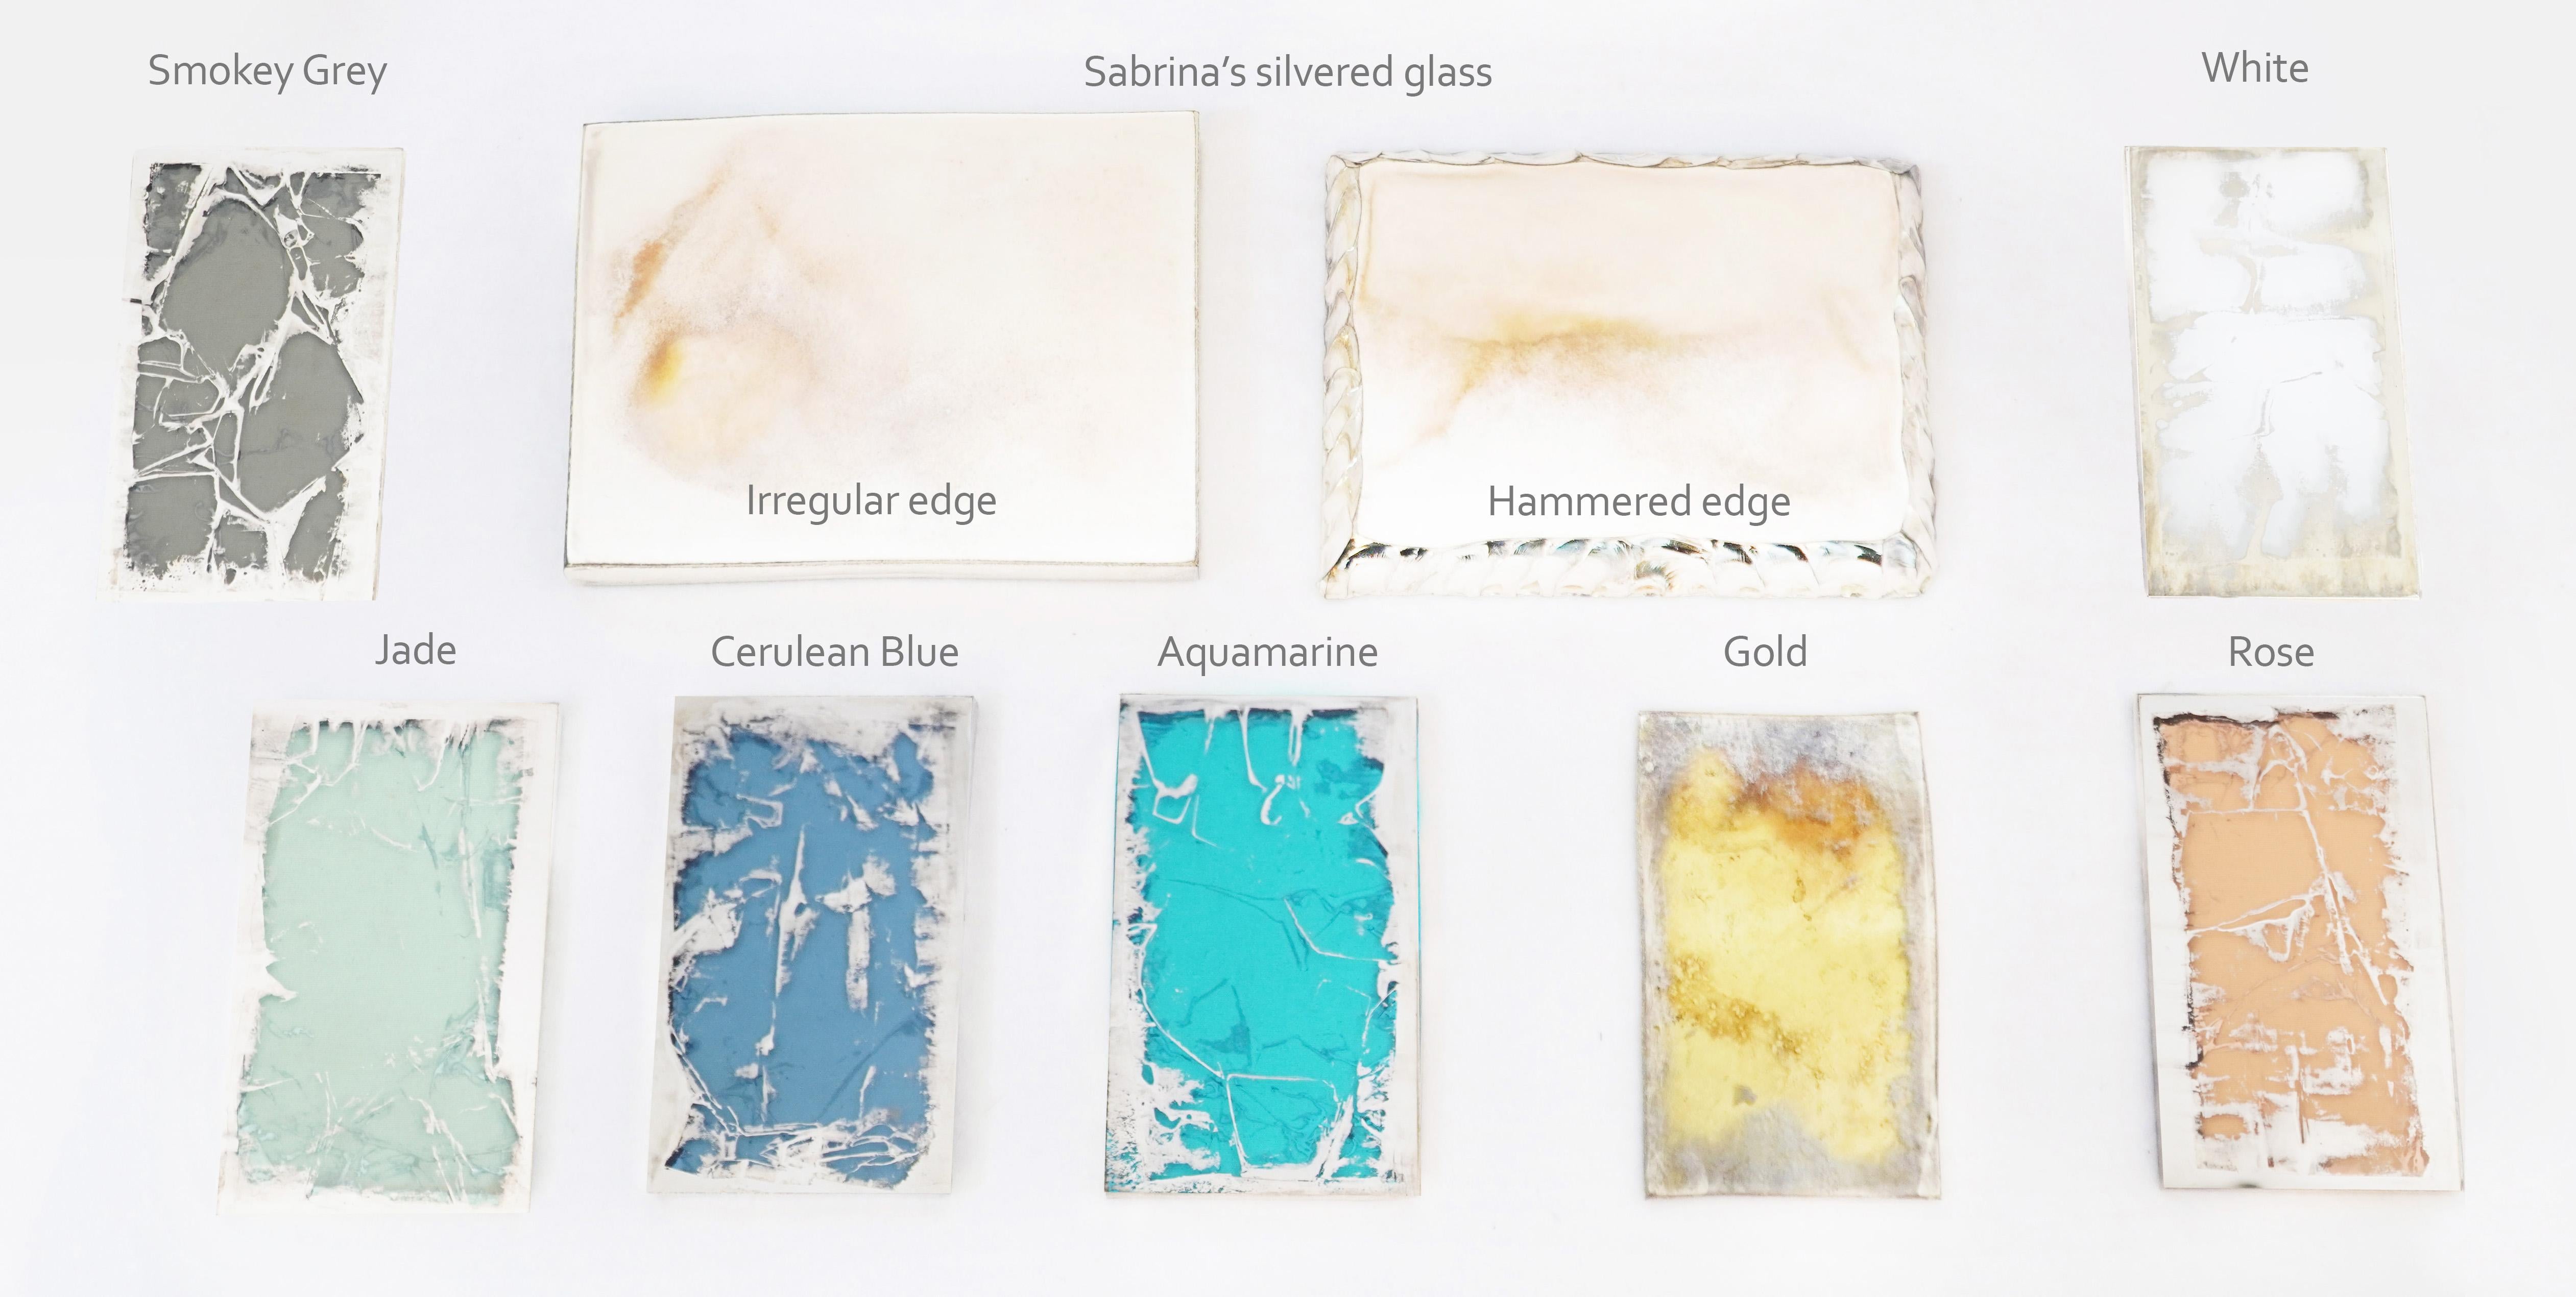 Une variété de précieux échantillons de verre argenté de Sabrina Landini.
Exigez vos couleurs, trois pièces au total vous seront fournies.
Faites votre demande de sélection.

Si vous avez besoin de toutes les couleurs disponibles dans la collection